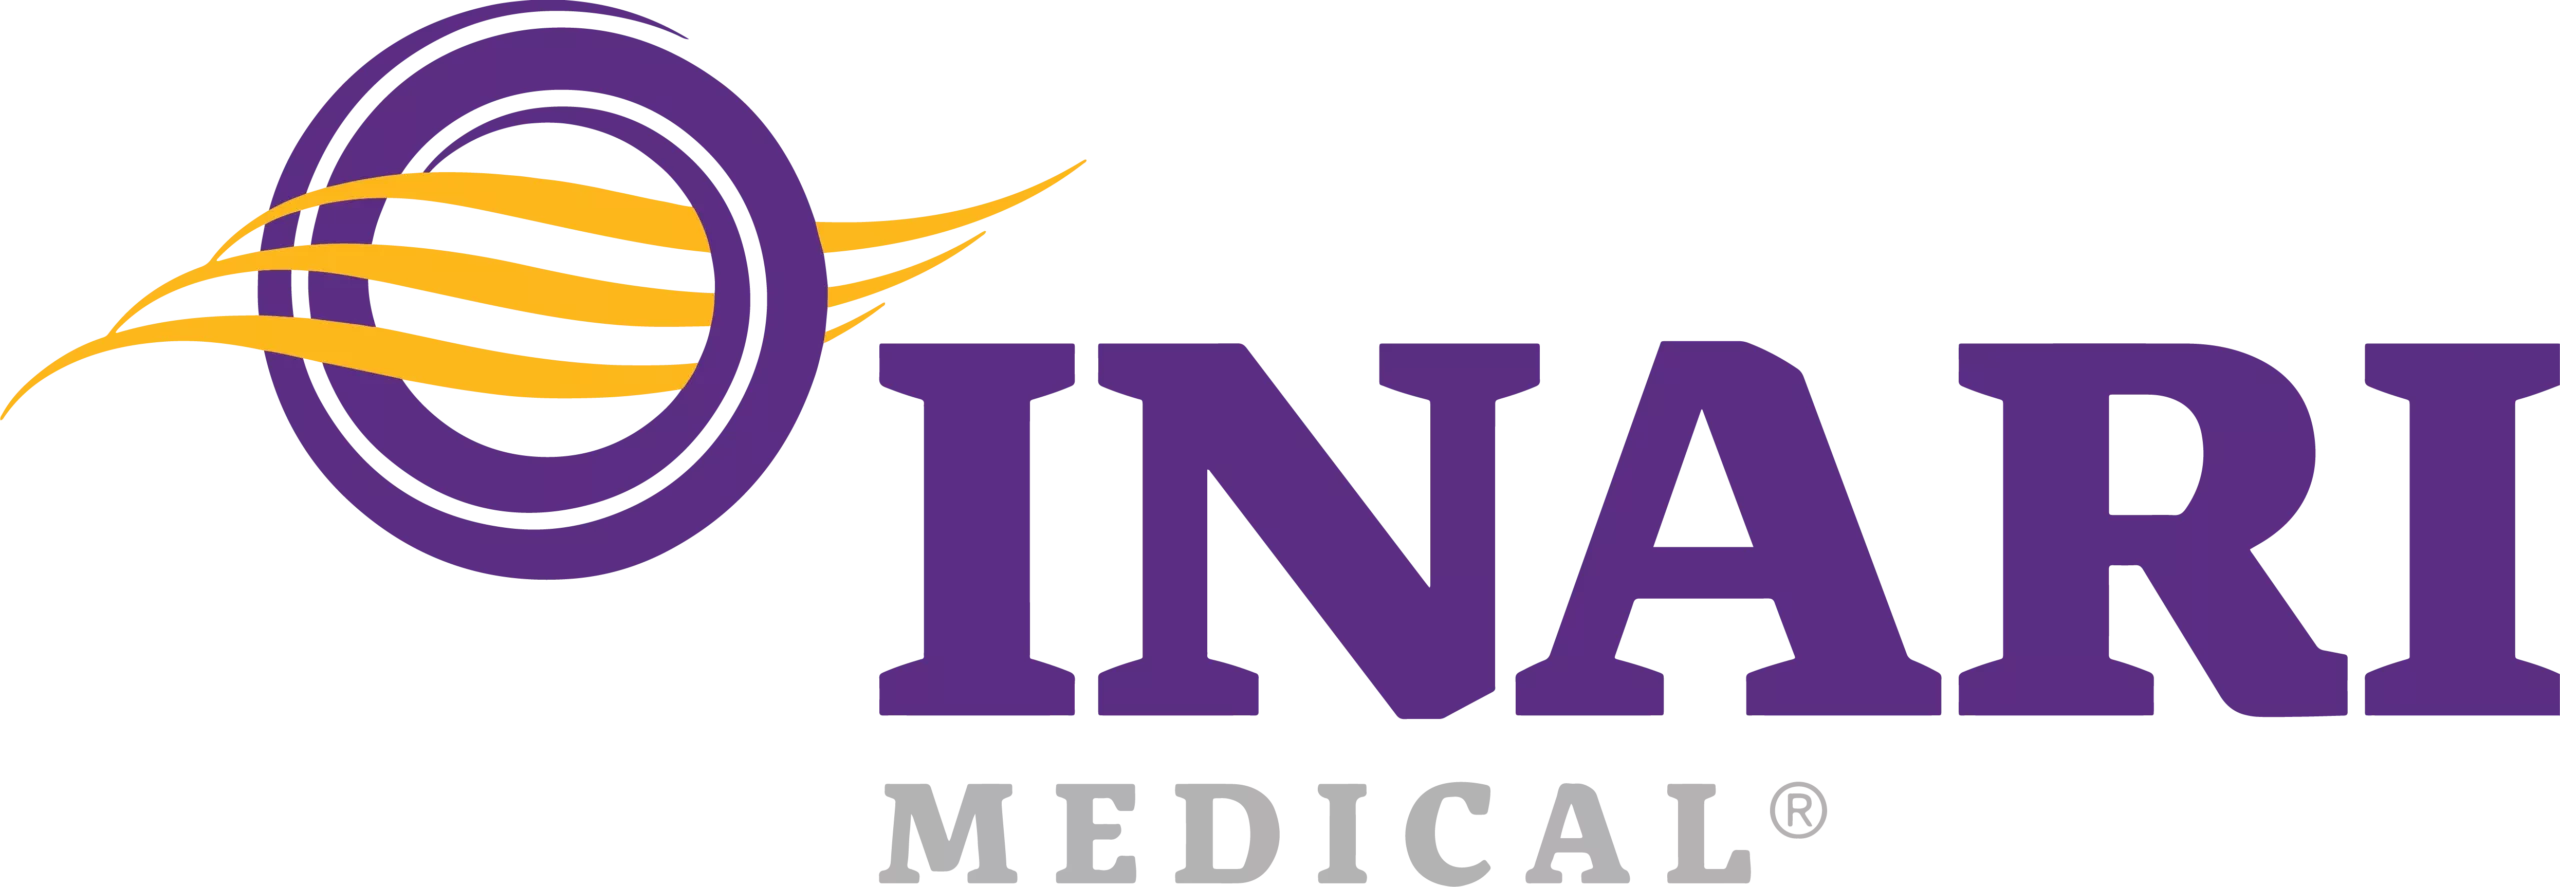 Inari Logo